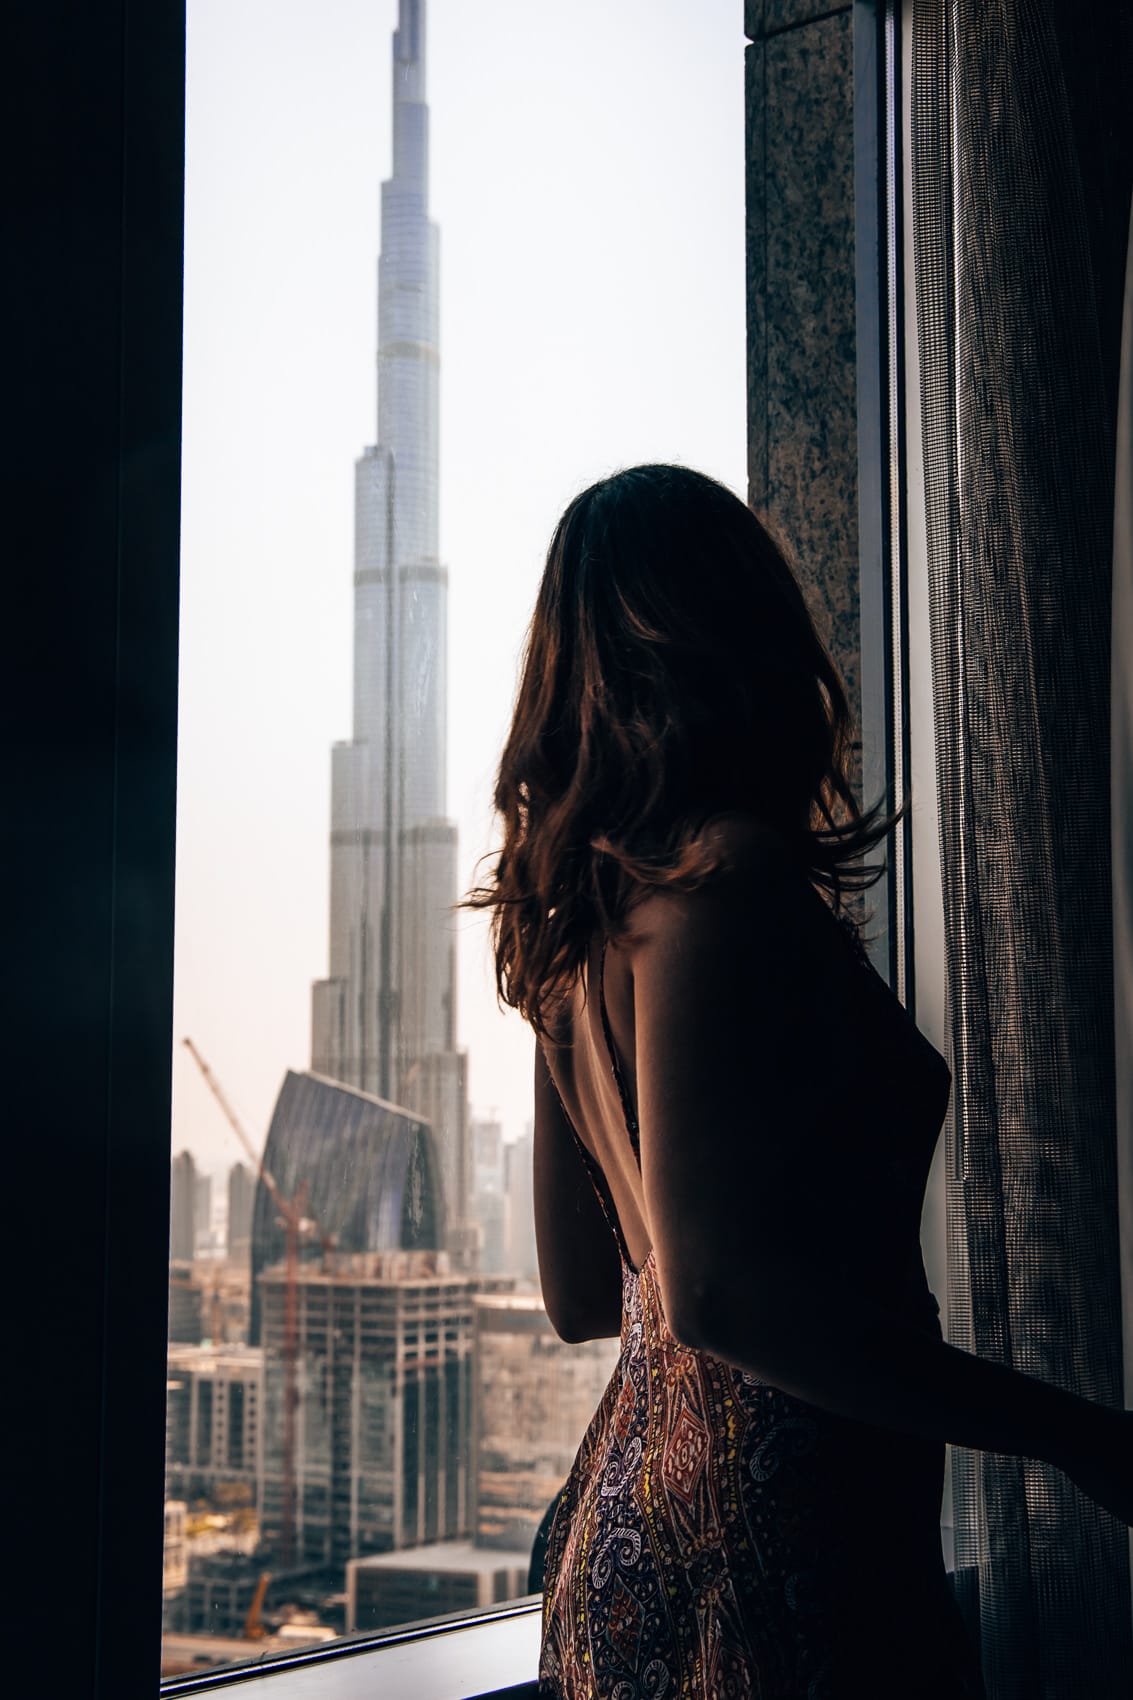 Shangri-La Dubai: Zimmer & Pool mit Blick auf den Burj Khalifa